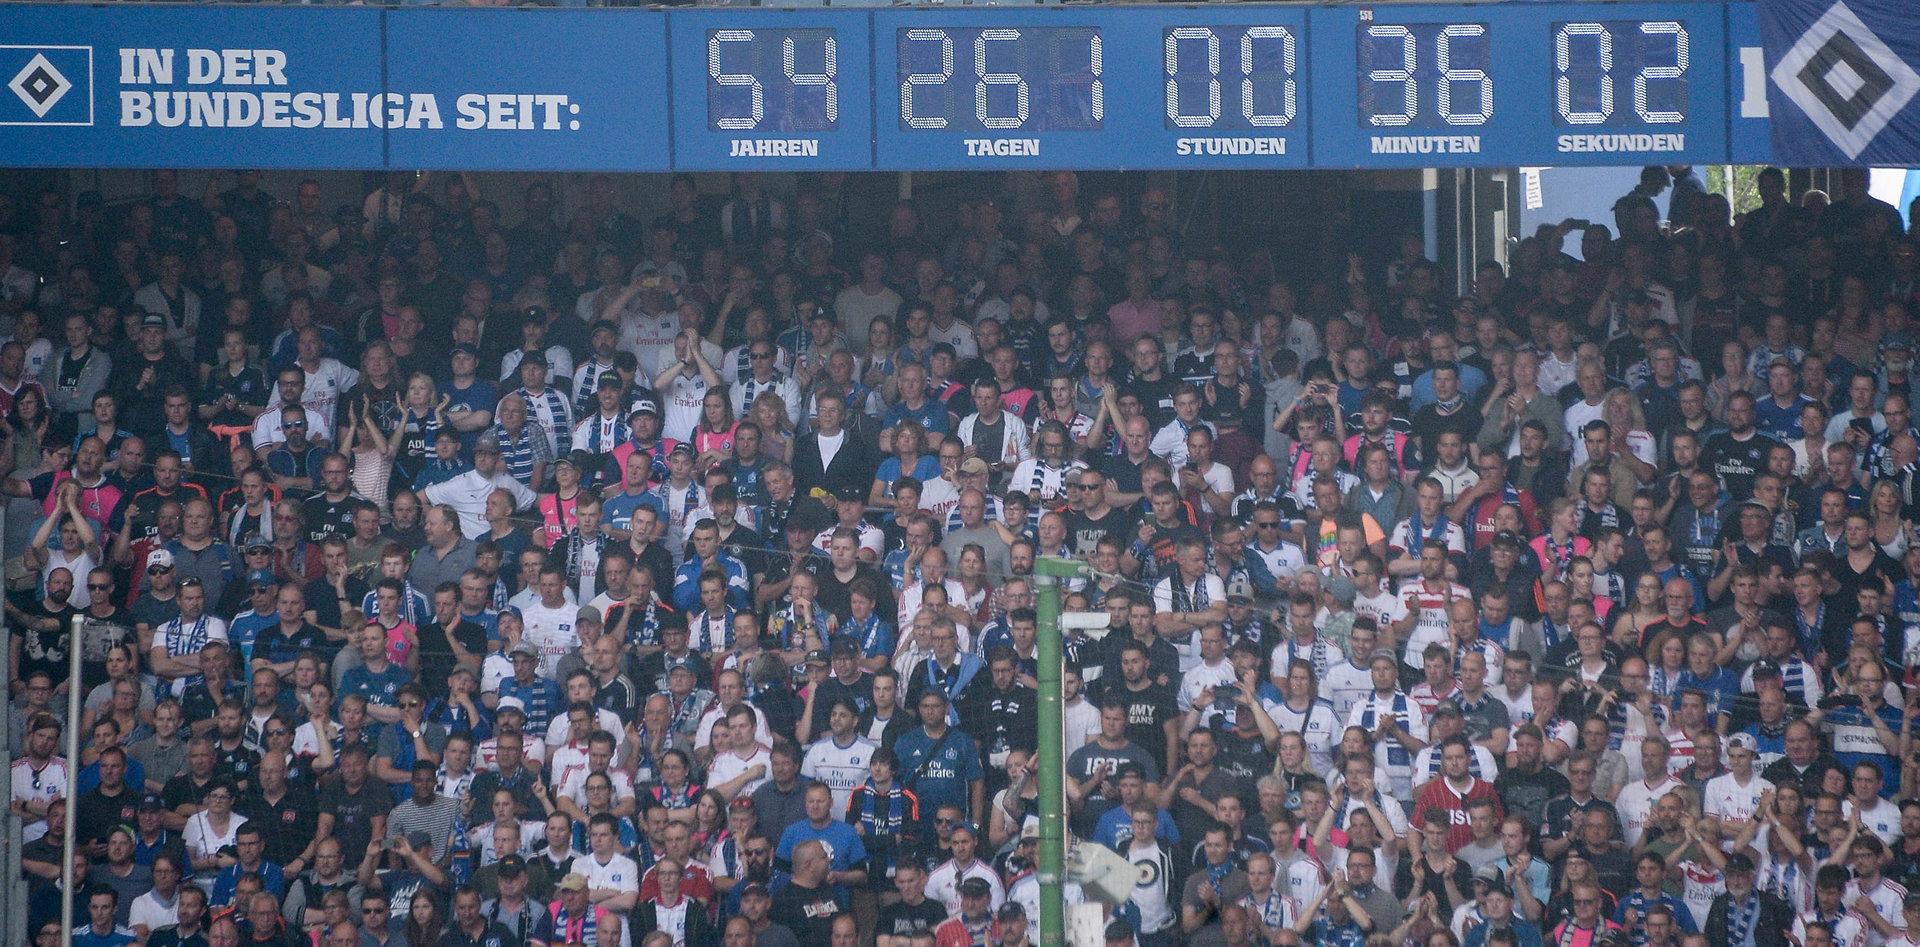 Die berühmte Stadion-Uhr des HSV wird abgebaut